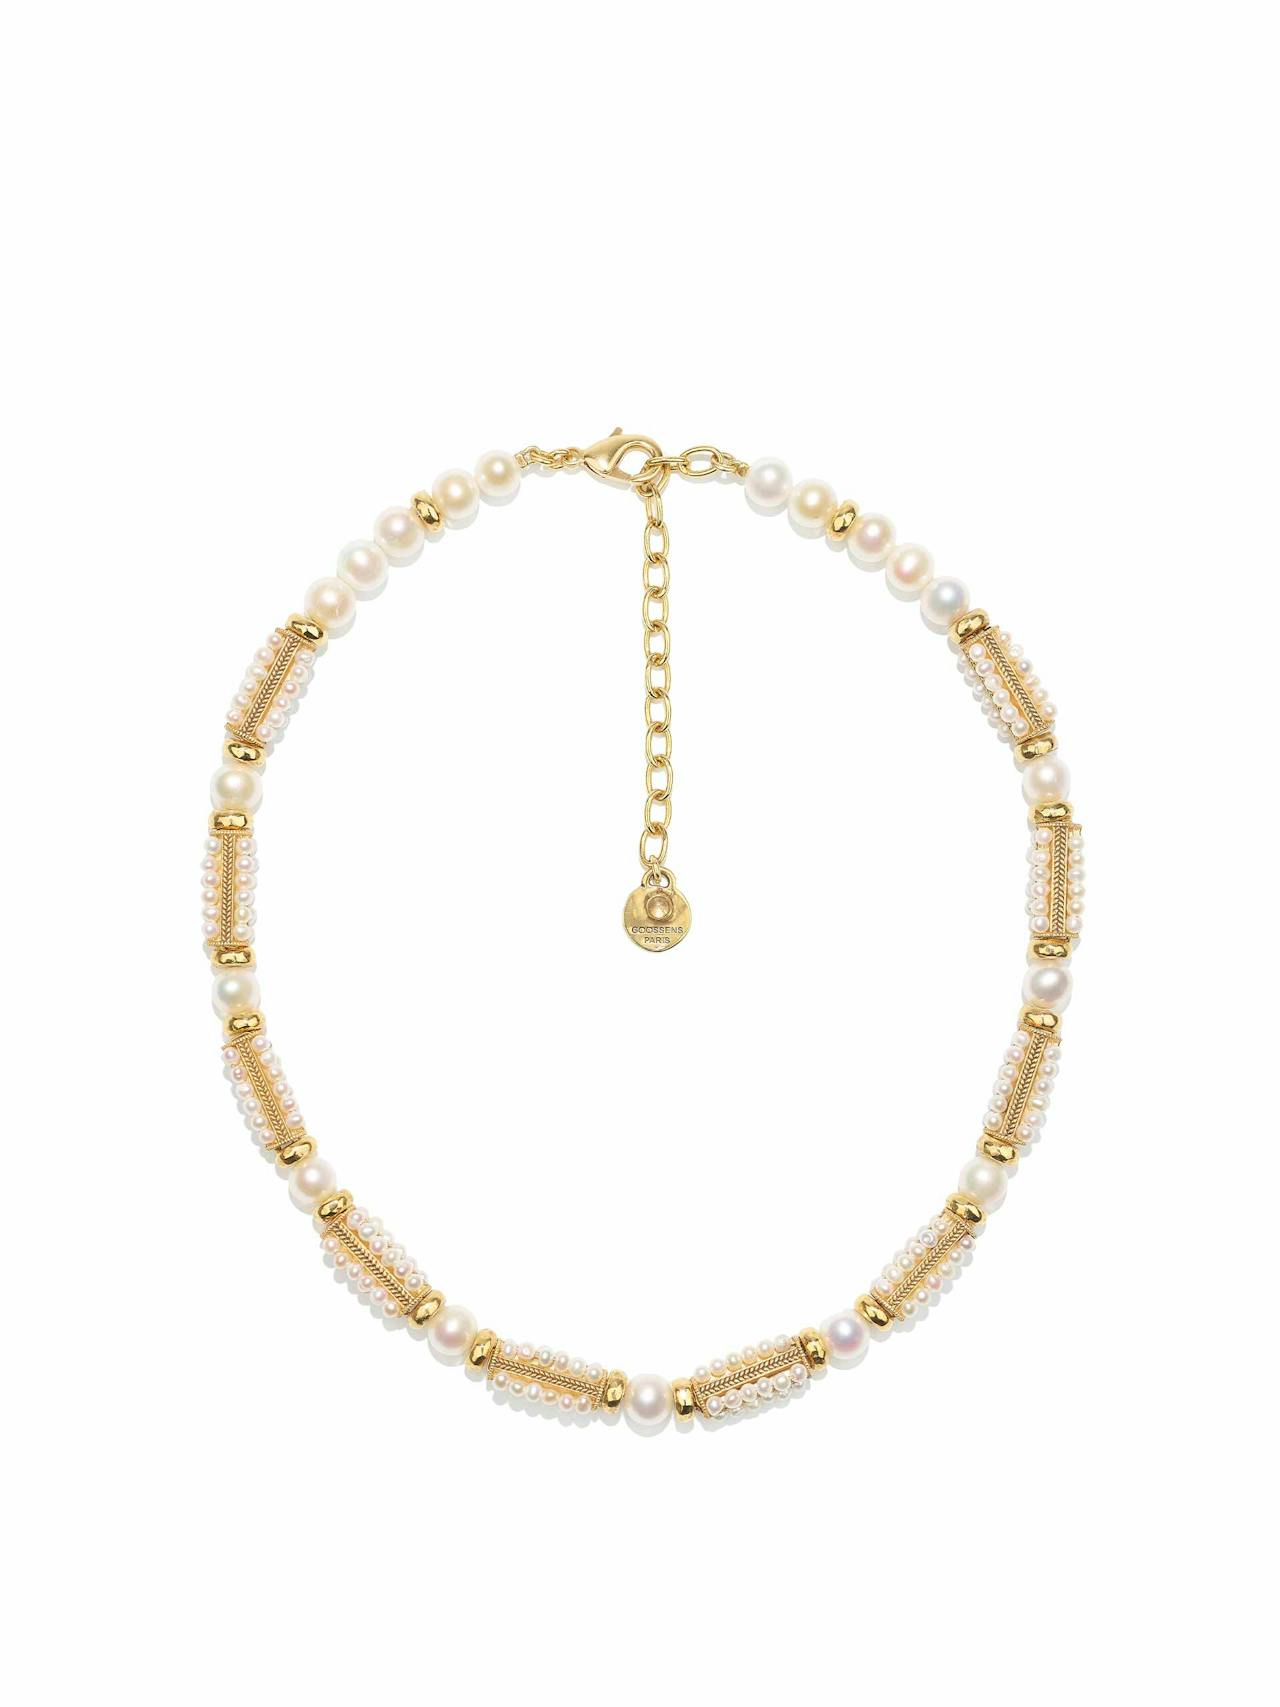 Venise gold-bathed pearl-embellished necklace